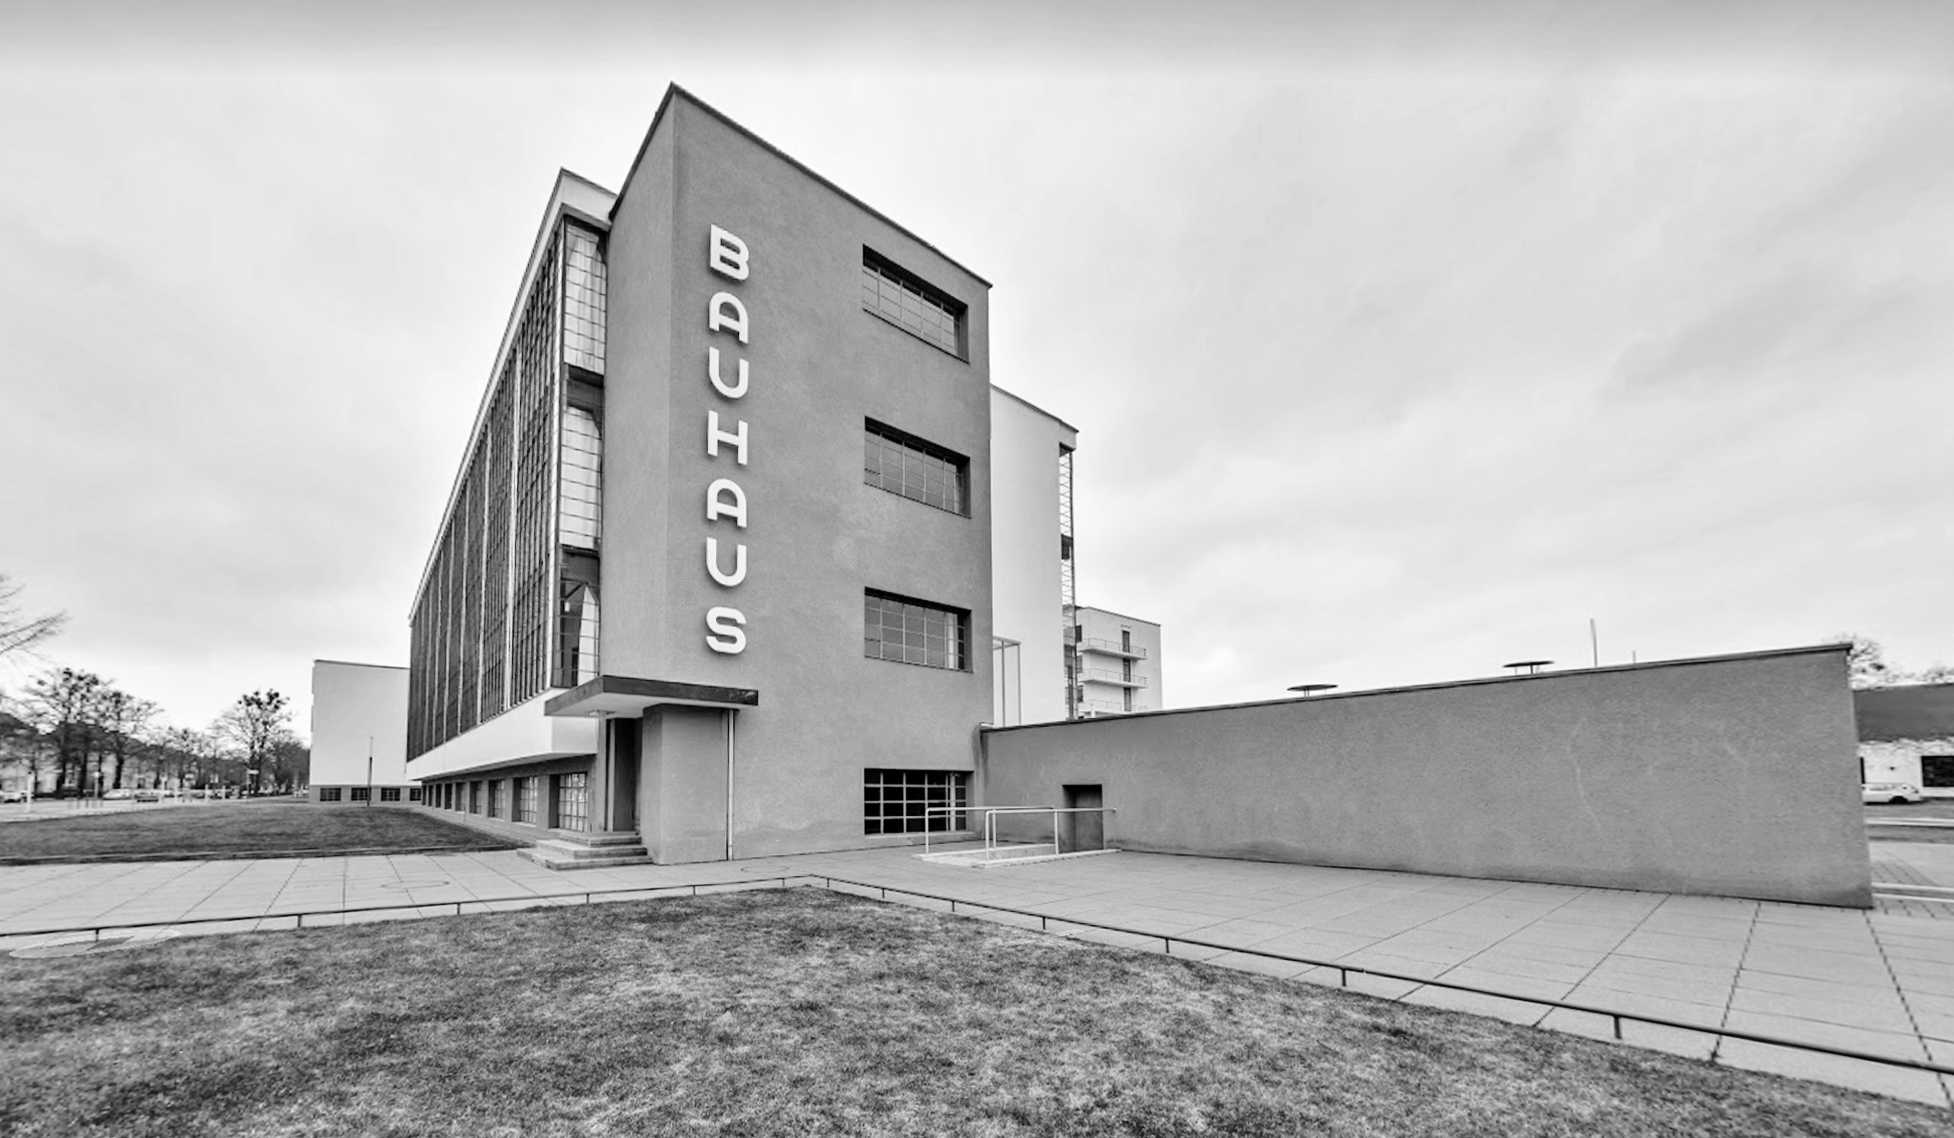 Bauhaus Dessau. Street view